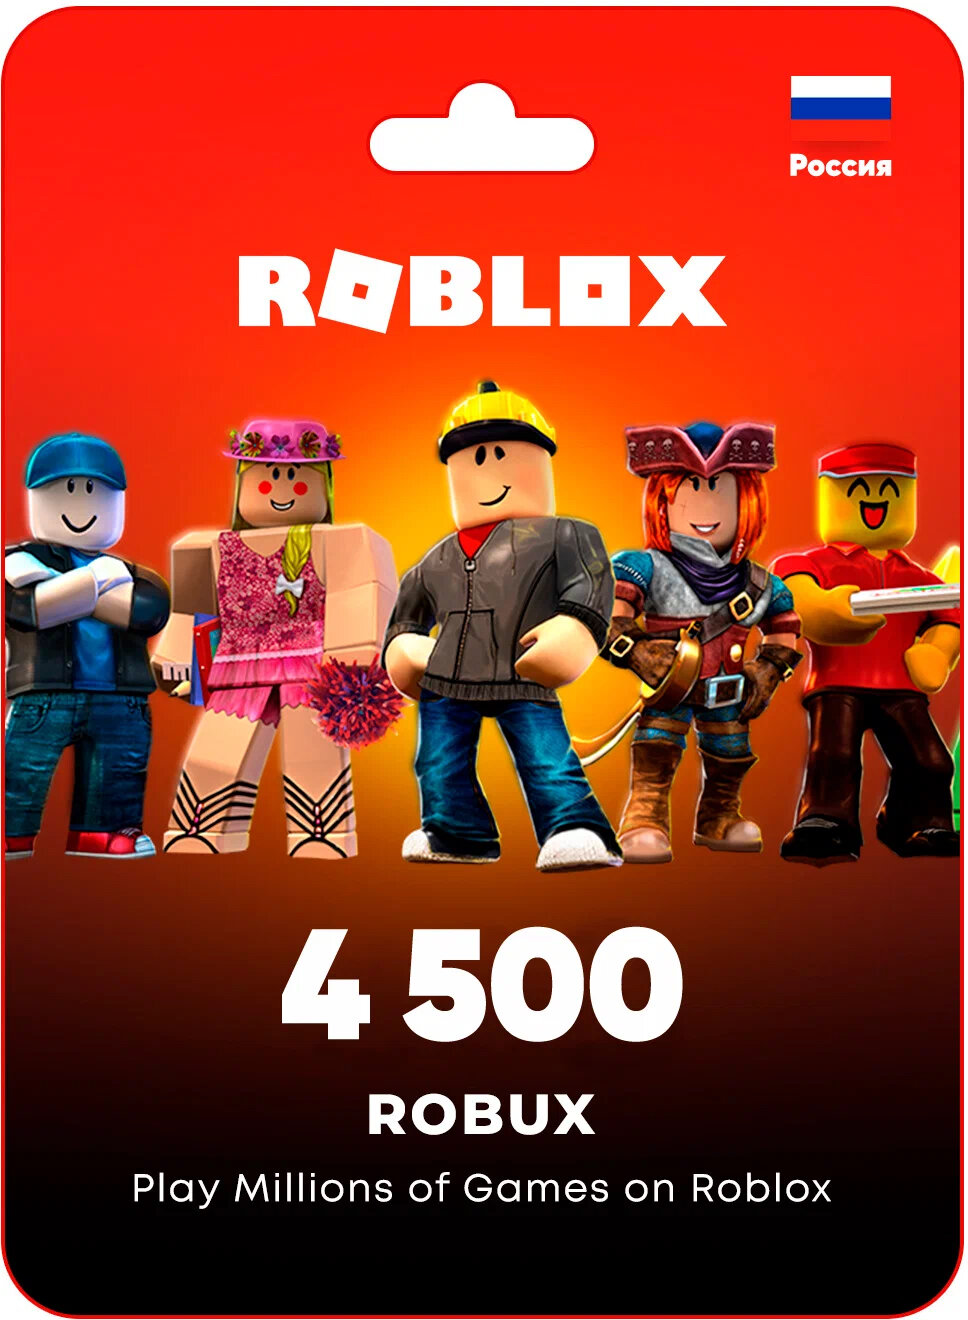 Игровая валюта платформы Roblox - 4500 Robux + подарок / Пополнение счета Roblox на 4500 Robux / Roblox Gift Card (Весь мир, Россия, Беларусь)